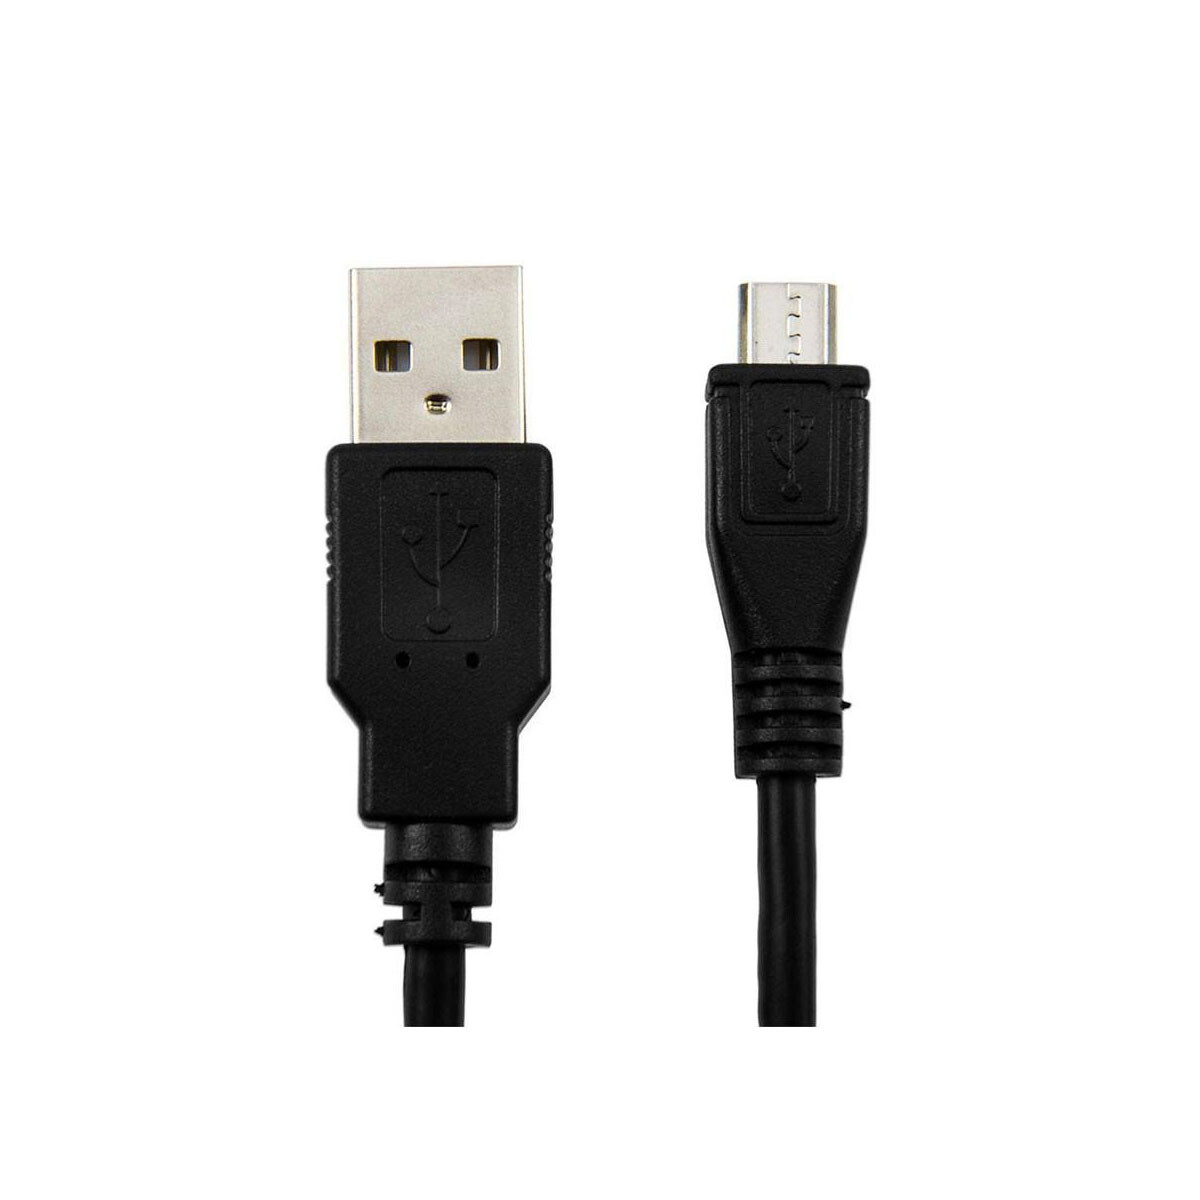 Cable Argom USB-C 3.0 